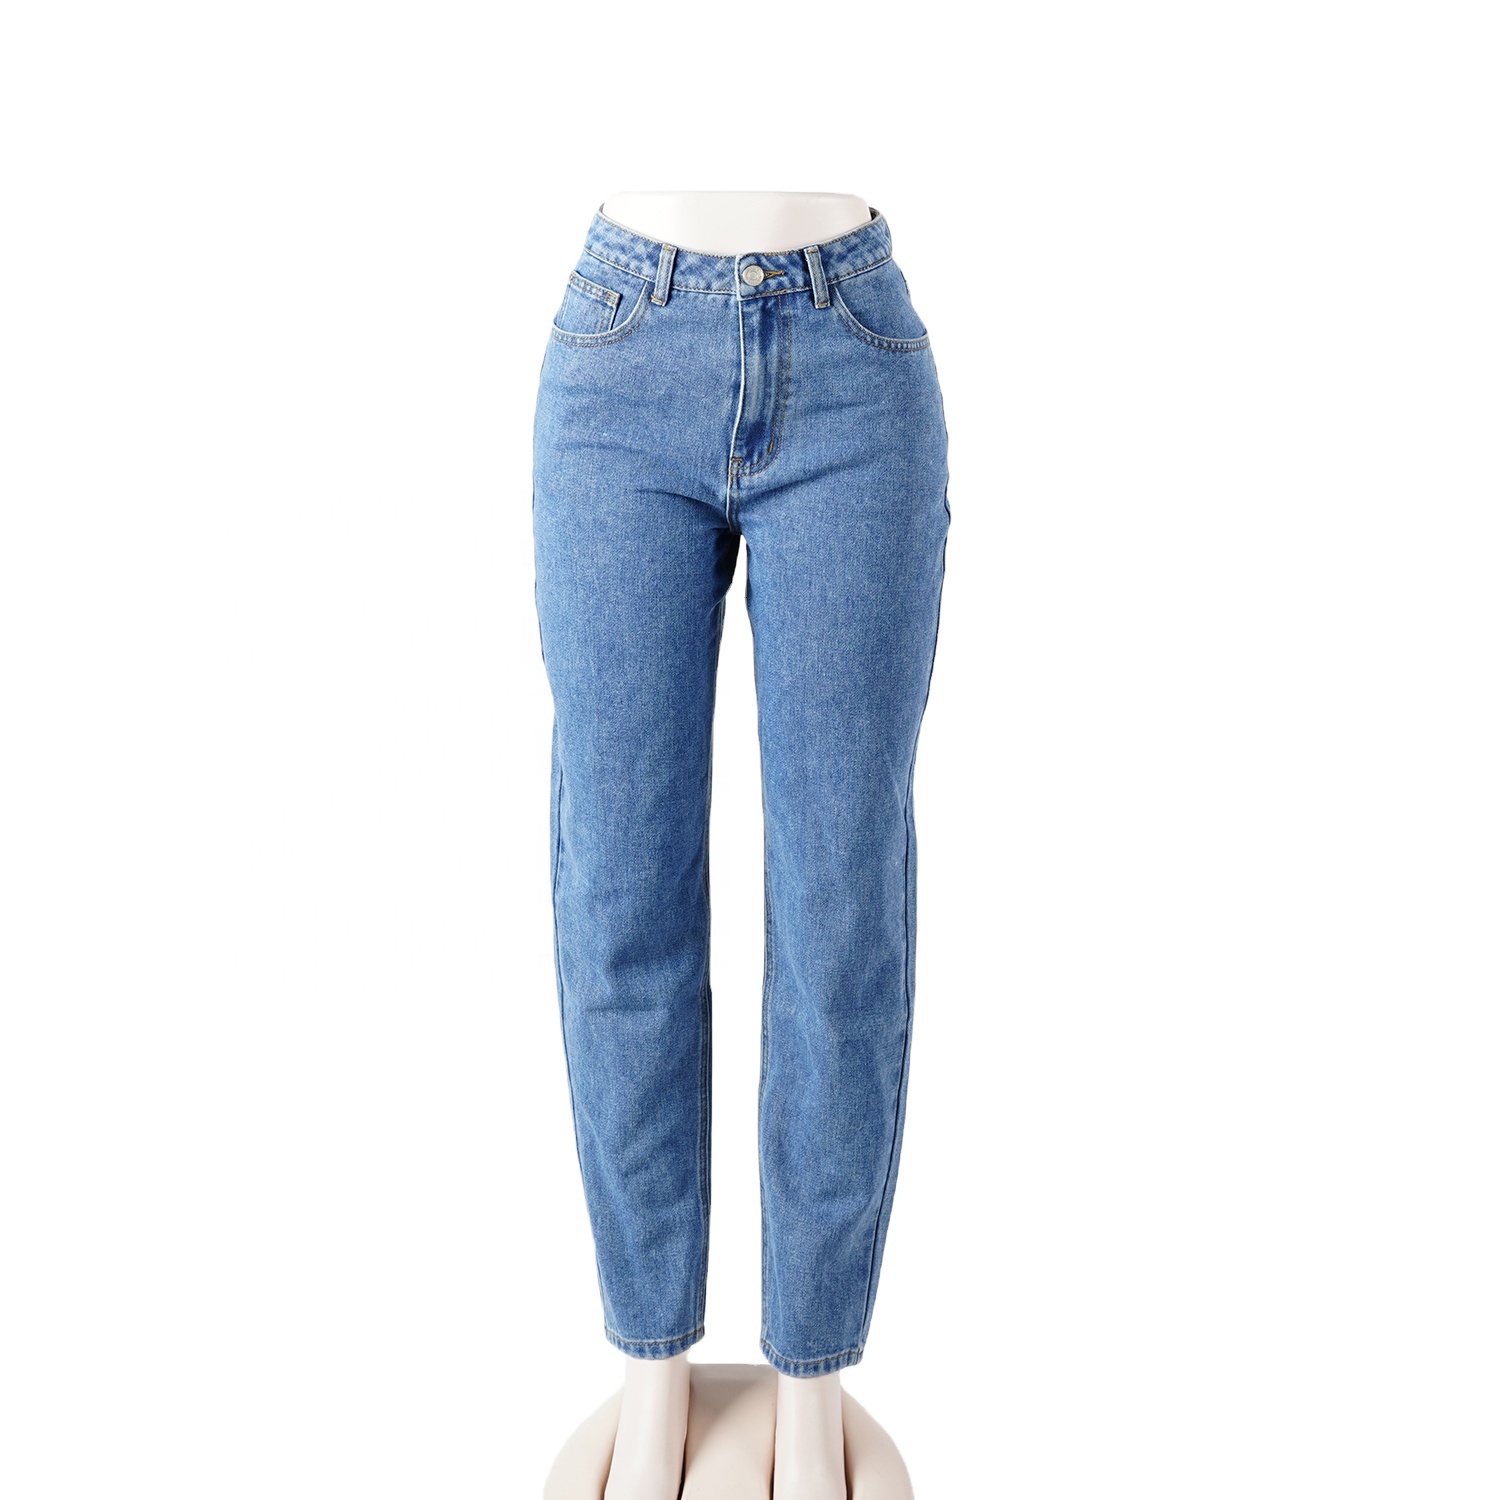 SKYKINGDOM western wholesale women jeans cotton blue regular style fabrics long jeans for women